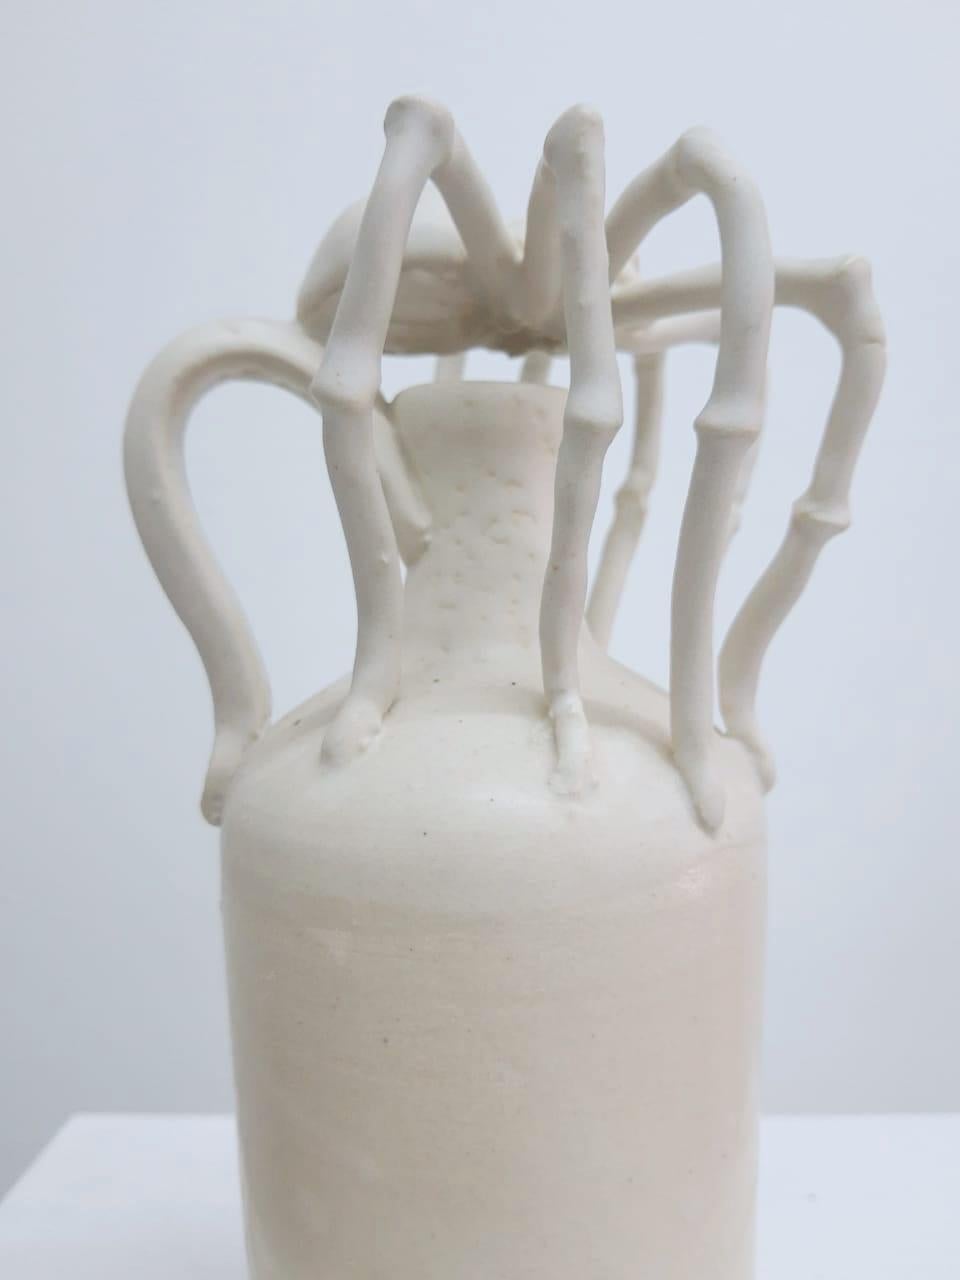 Spider vase - Contemporary Sculpture by Claudio Jerónimo